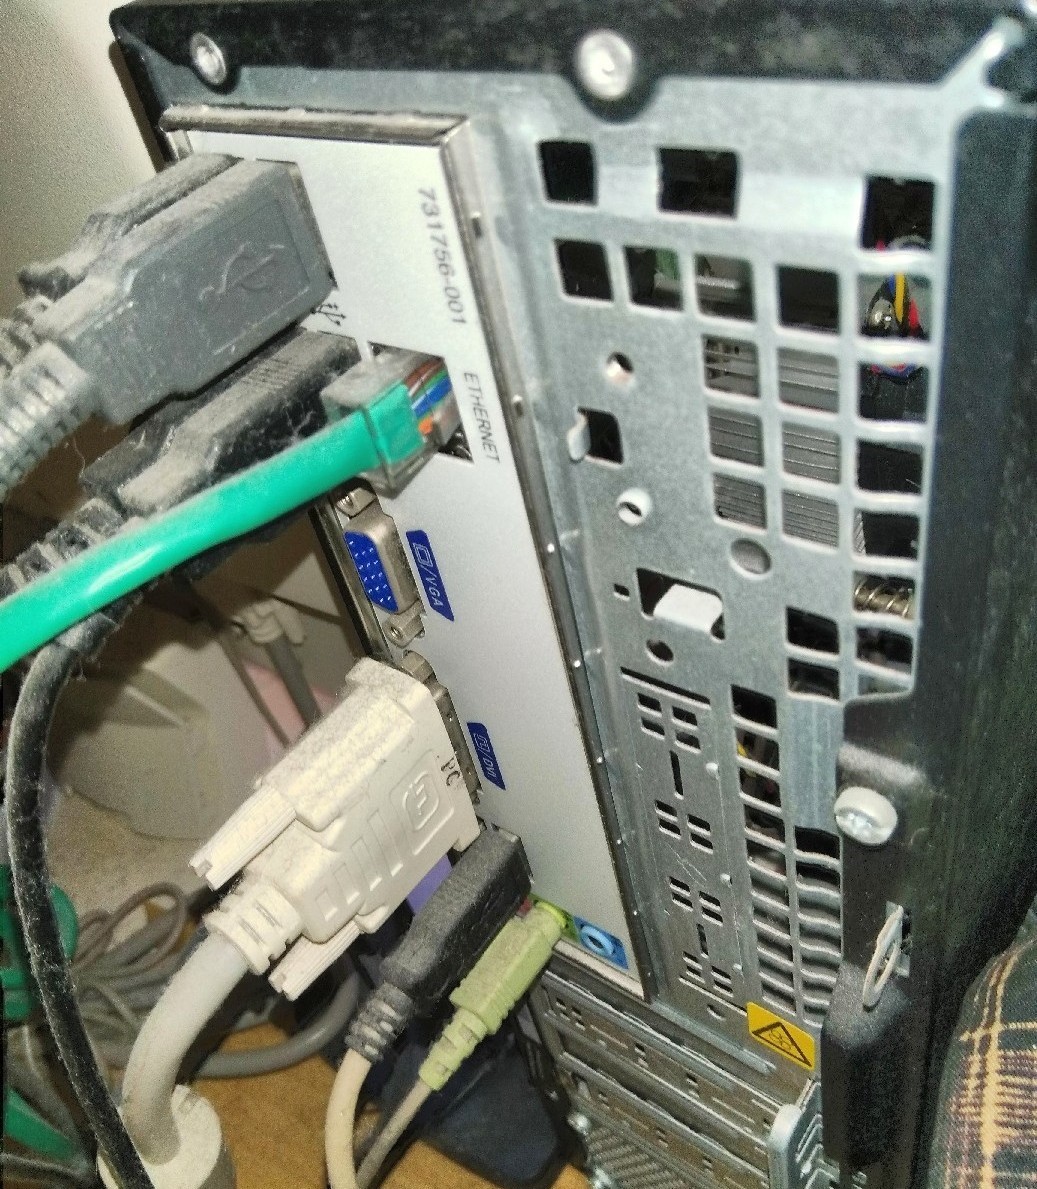 デスクトップパソコンの内部掃除はどうやるの おすすめアイテムも紹介 パソコントラブル解決するなら Pc110 にお任せ 不具合の原因や自分でできる修理方法をご紹介